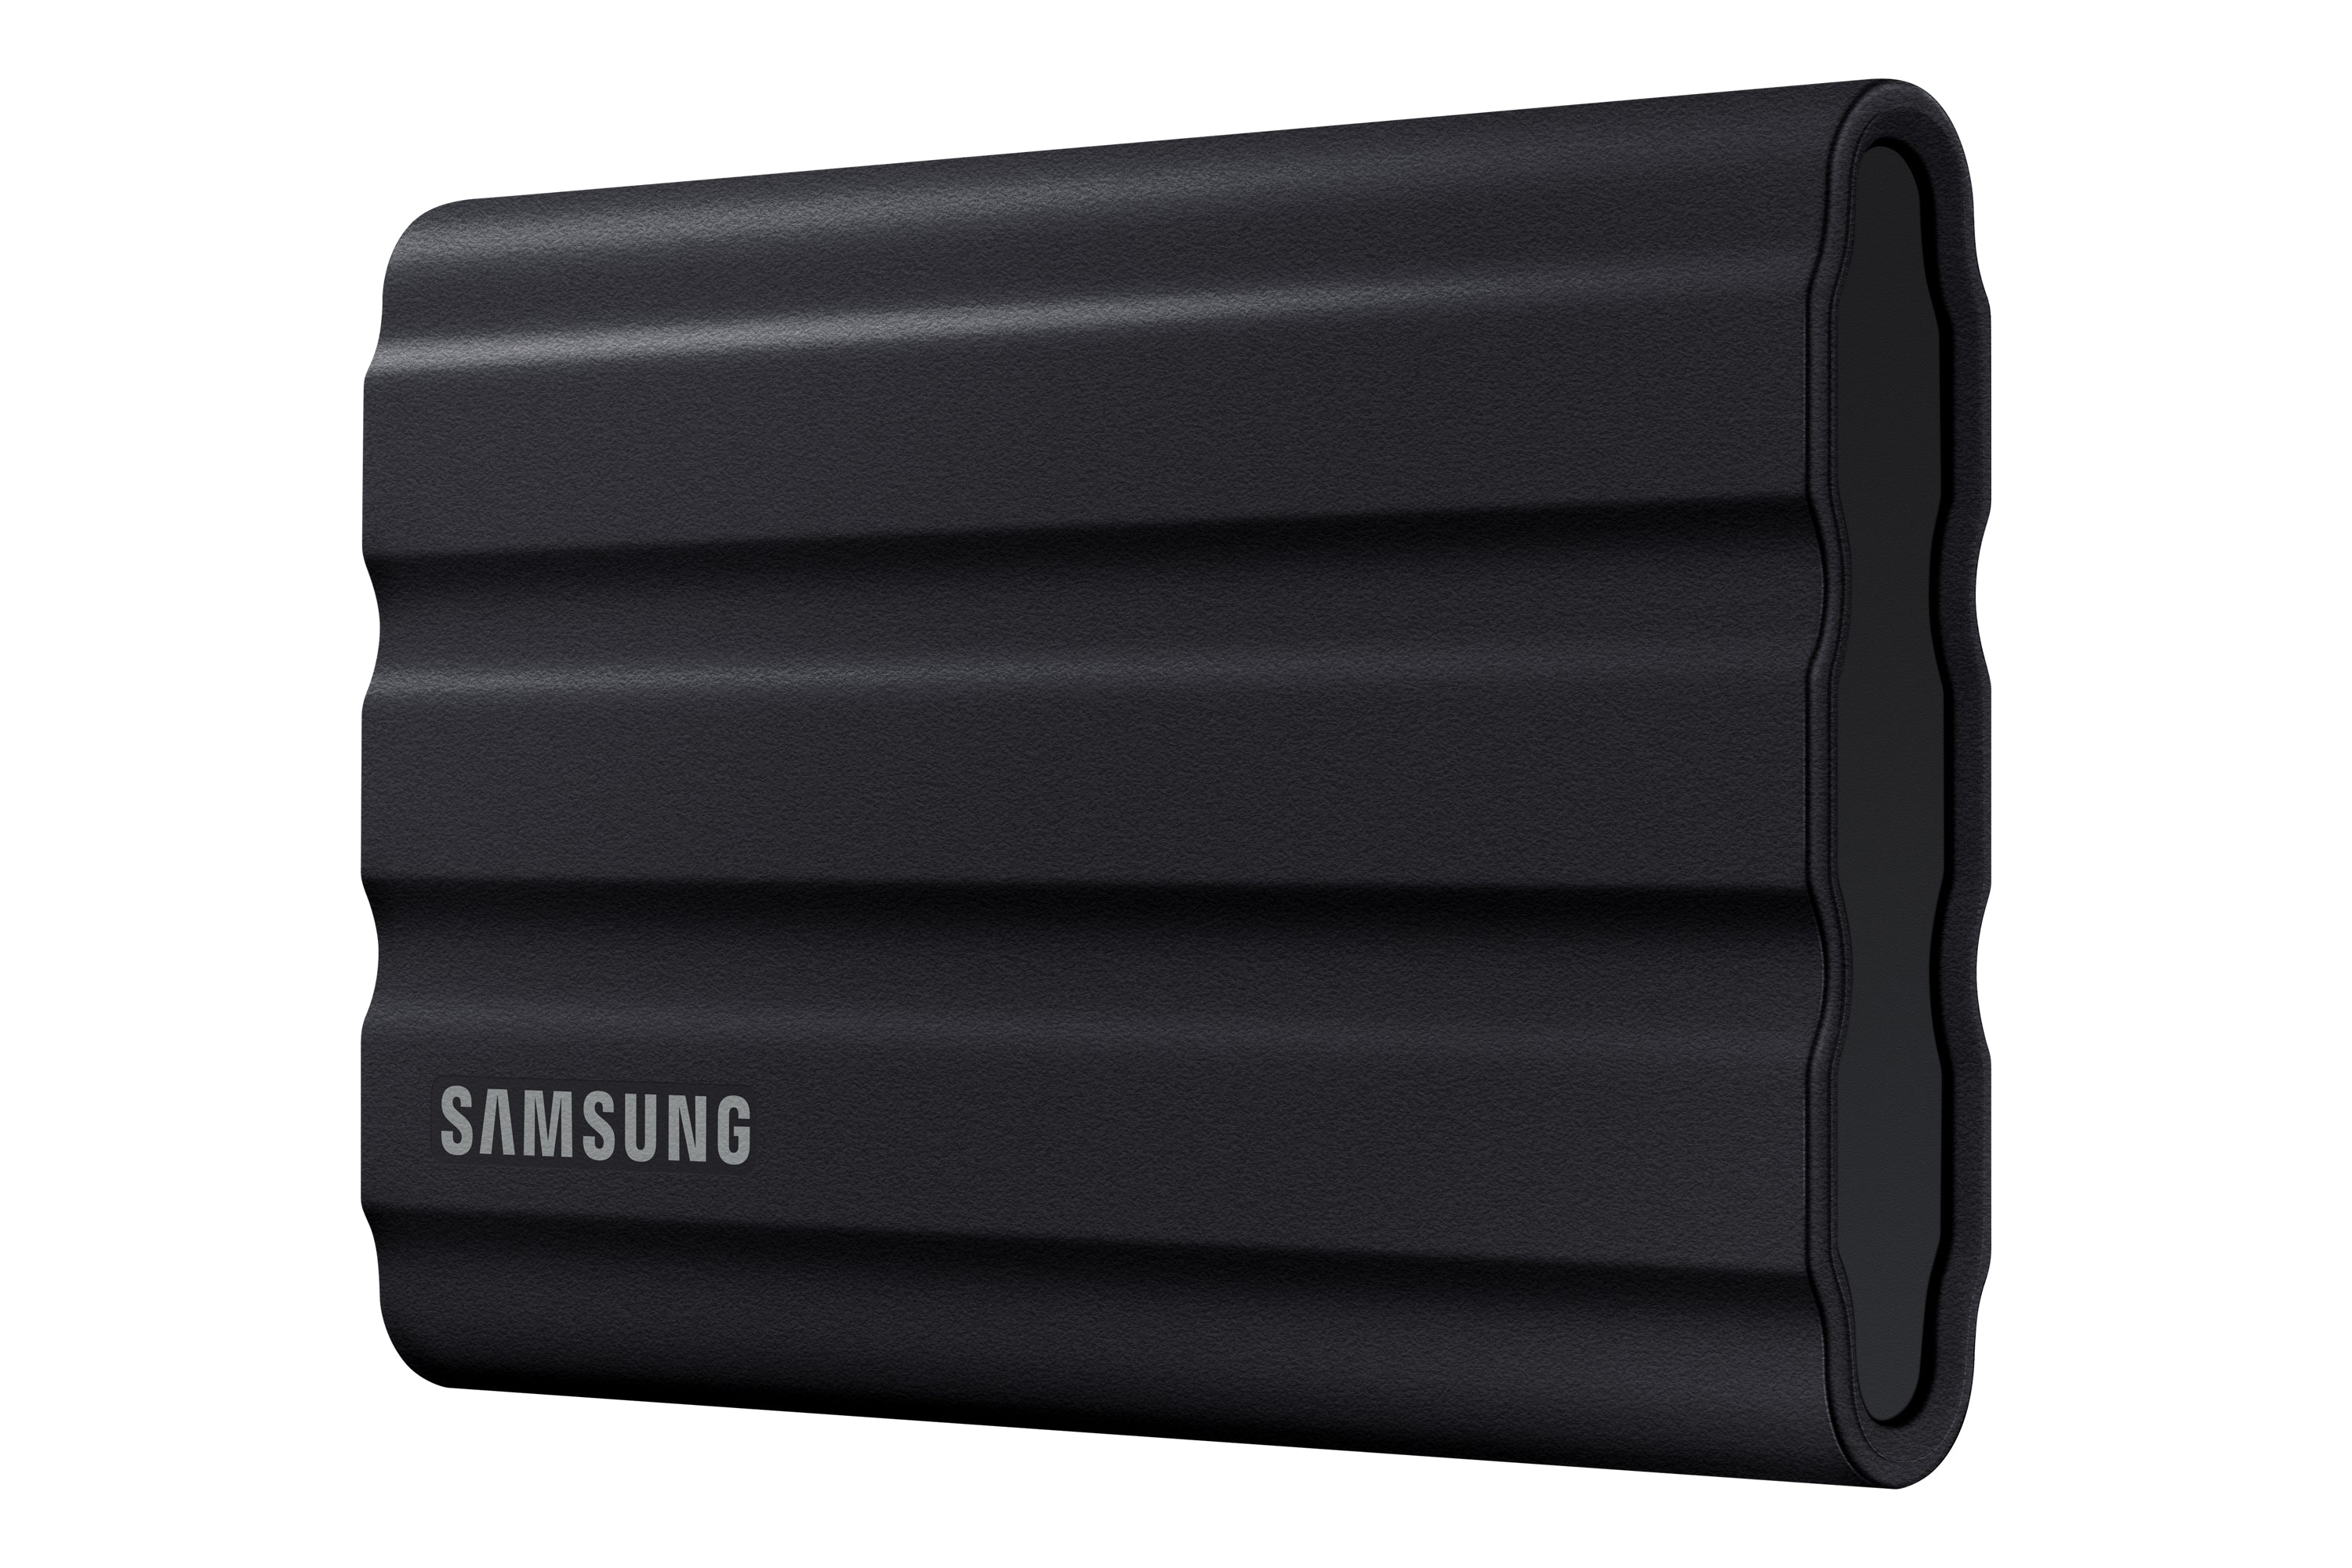 Samsung T7 Shield Solid State Drive MU-PE4T0S 4 TB USB 3.2 Gen 2